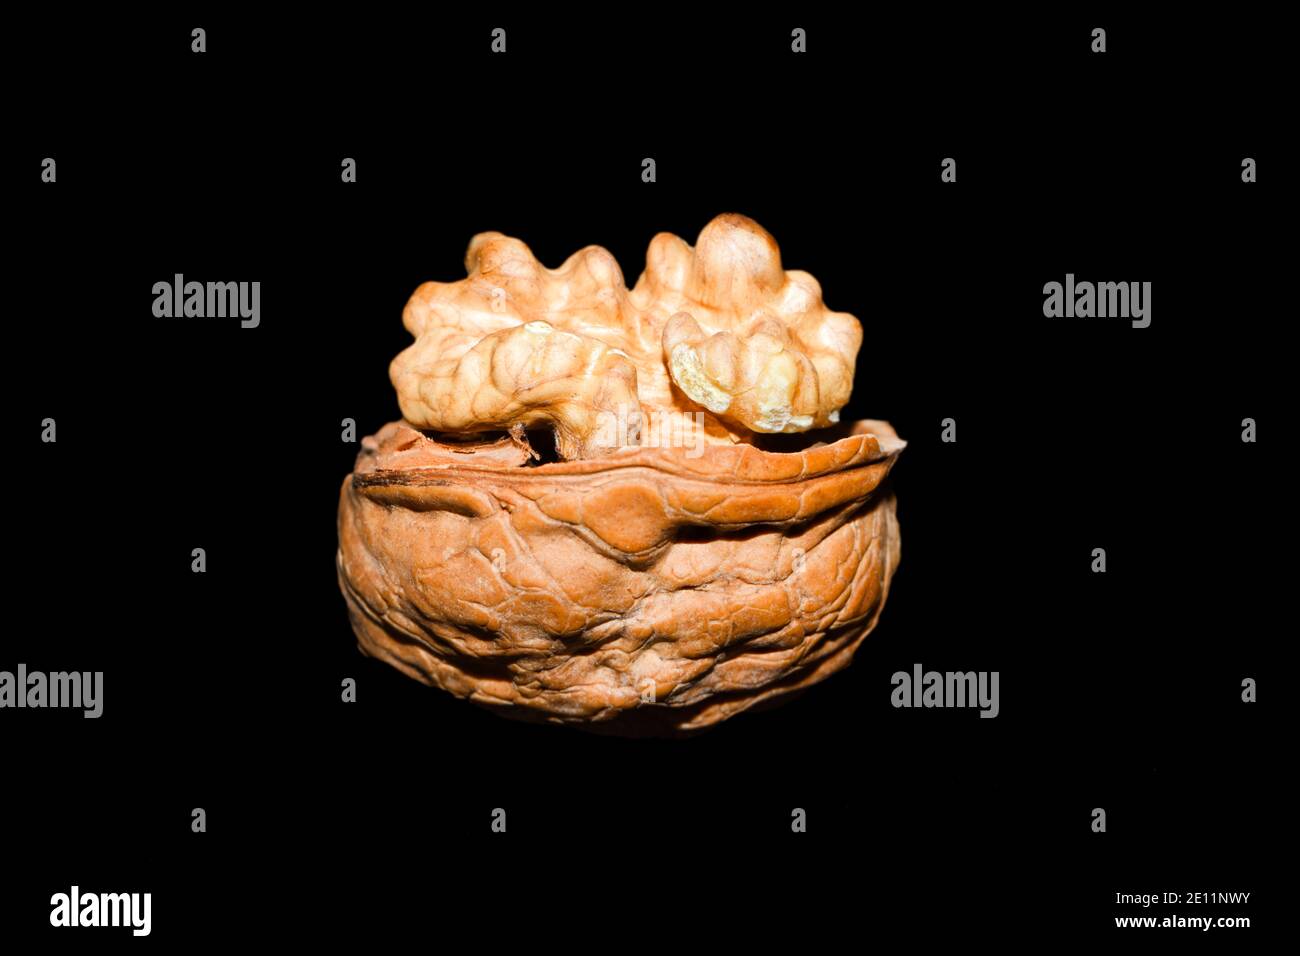 Open walnut Stock Photo